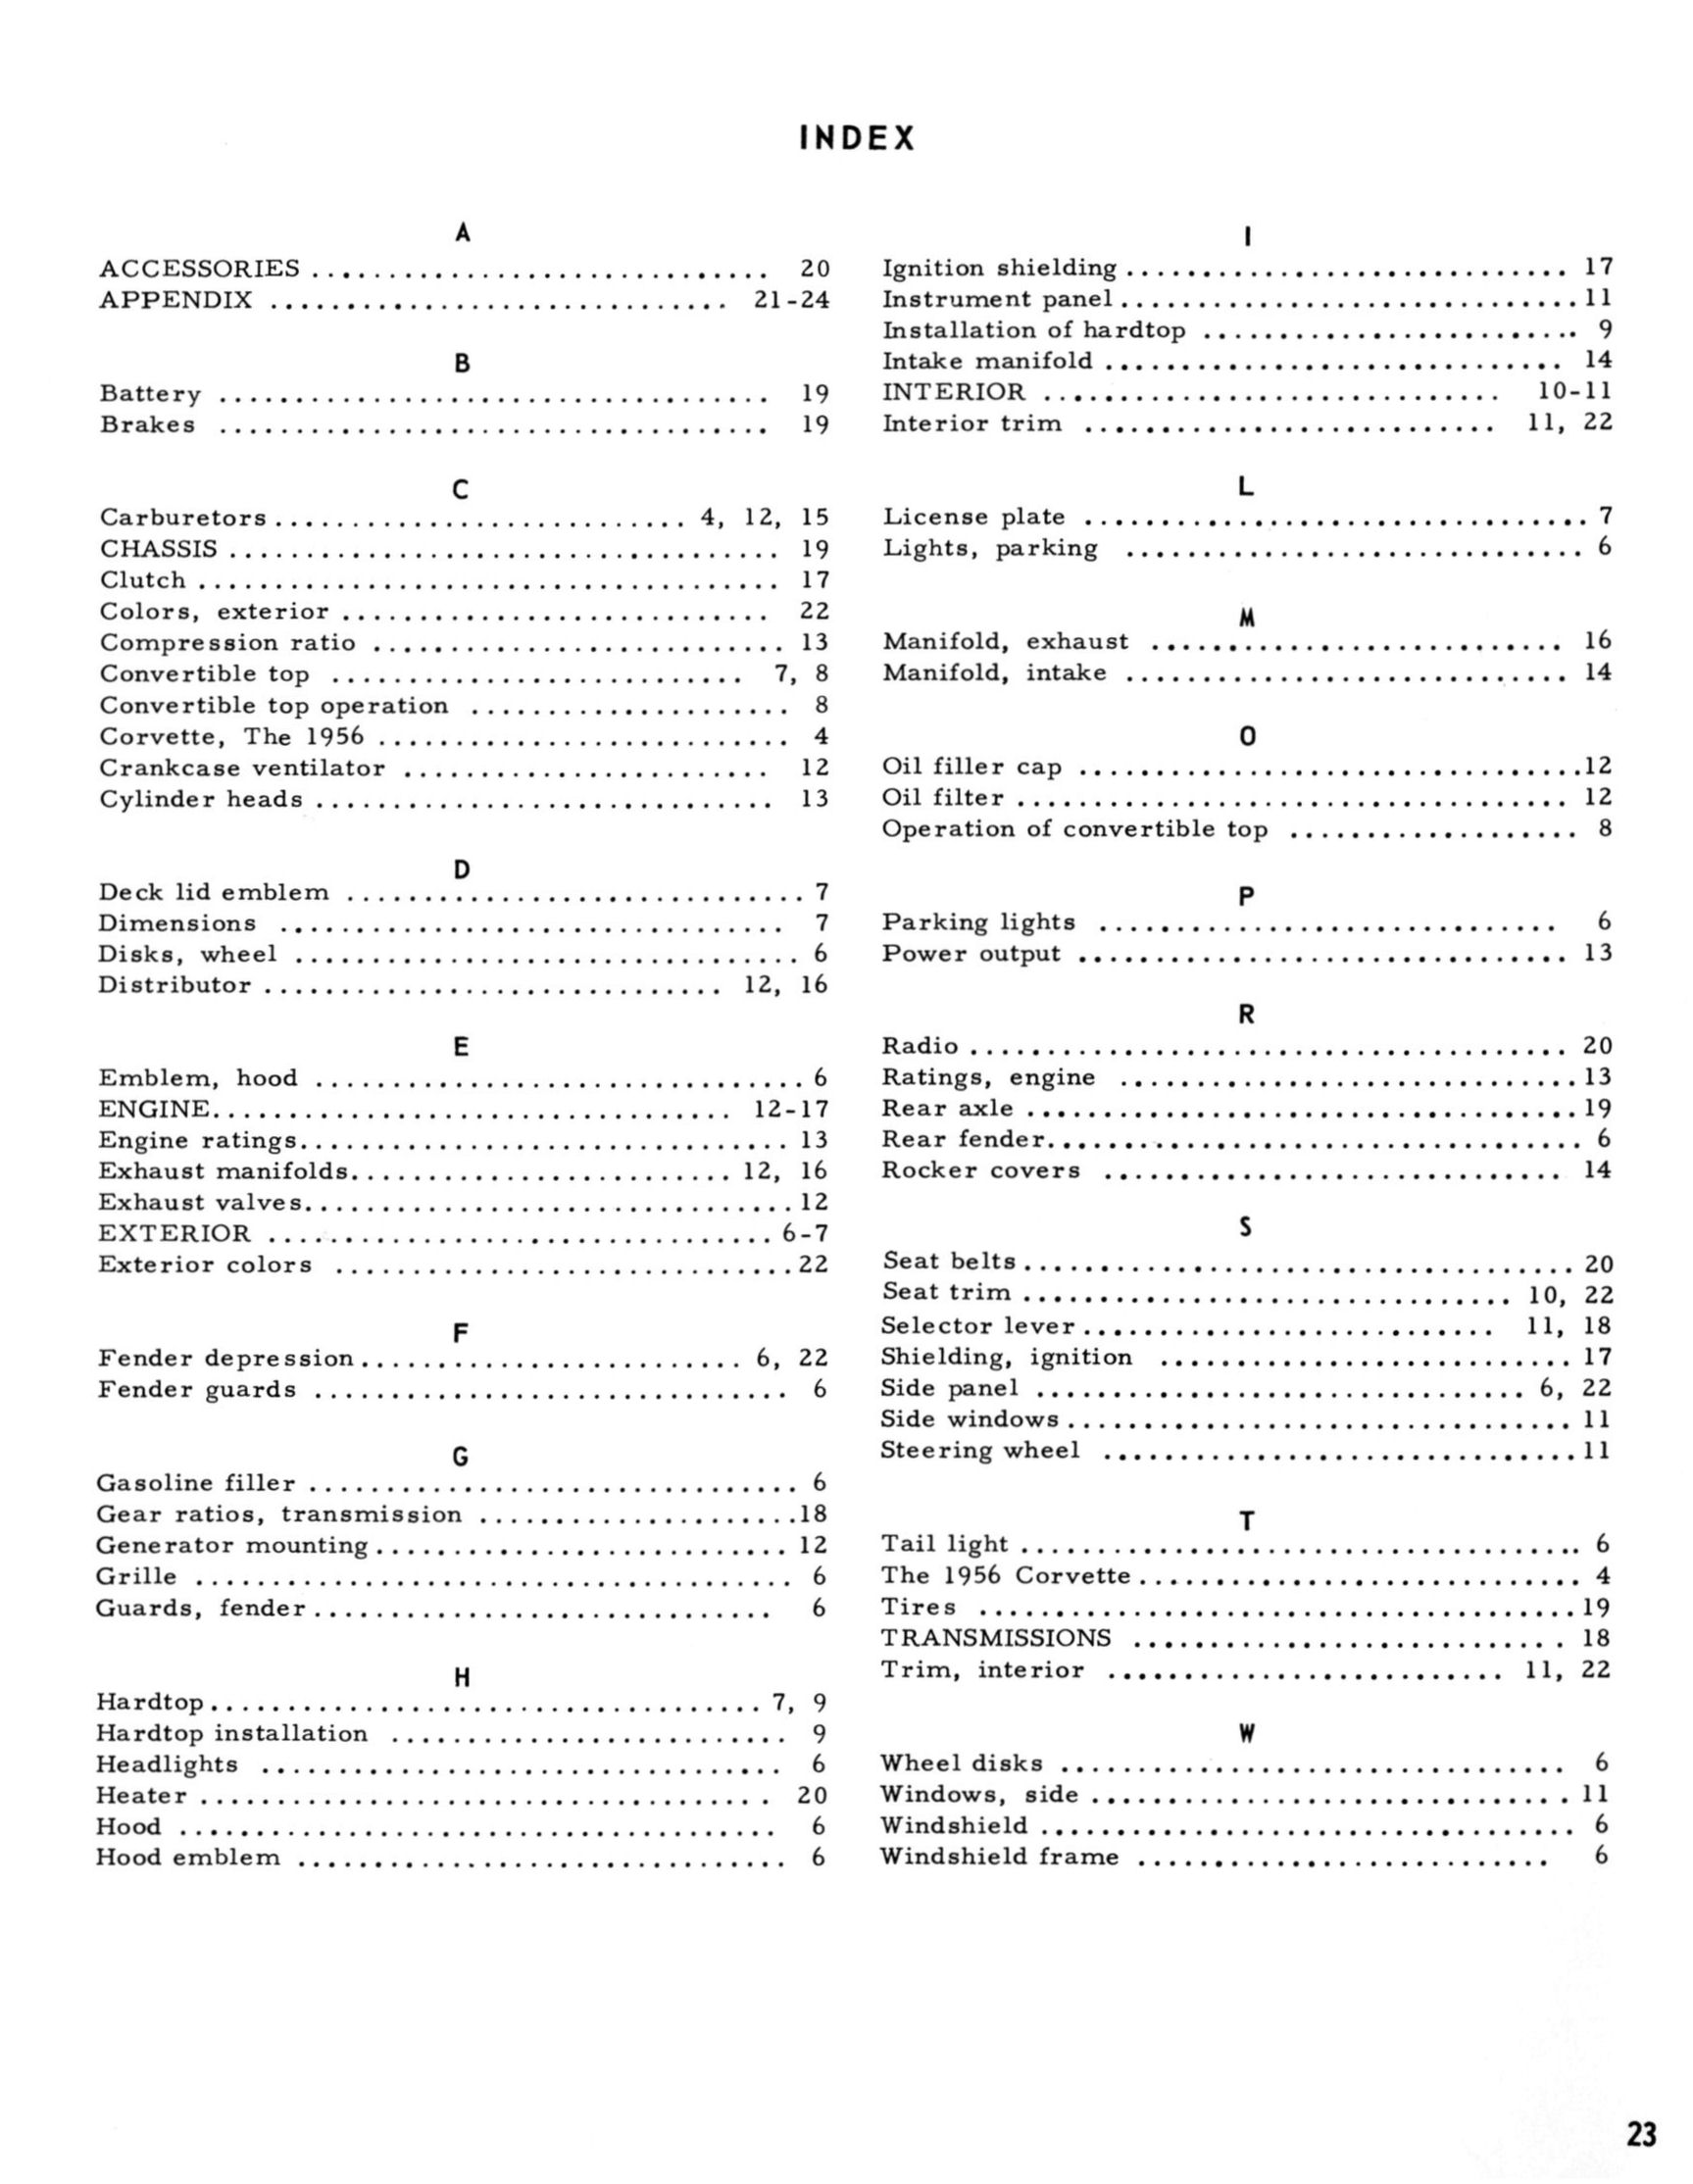 1956-57_Corvette_Engineering_Achievements_Page_23